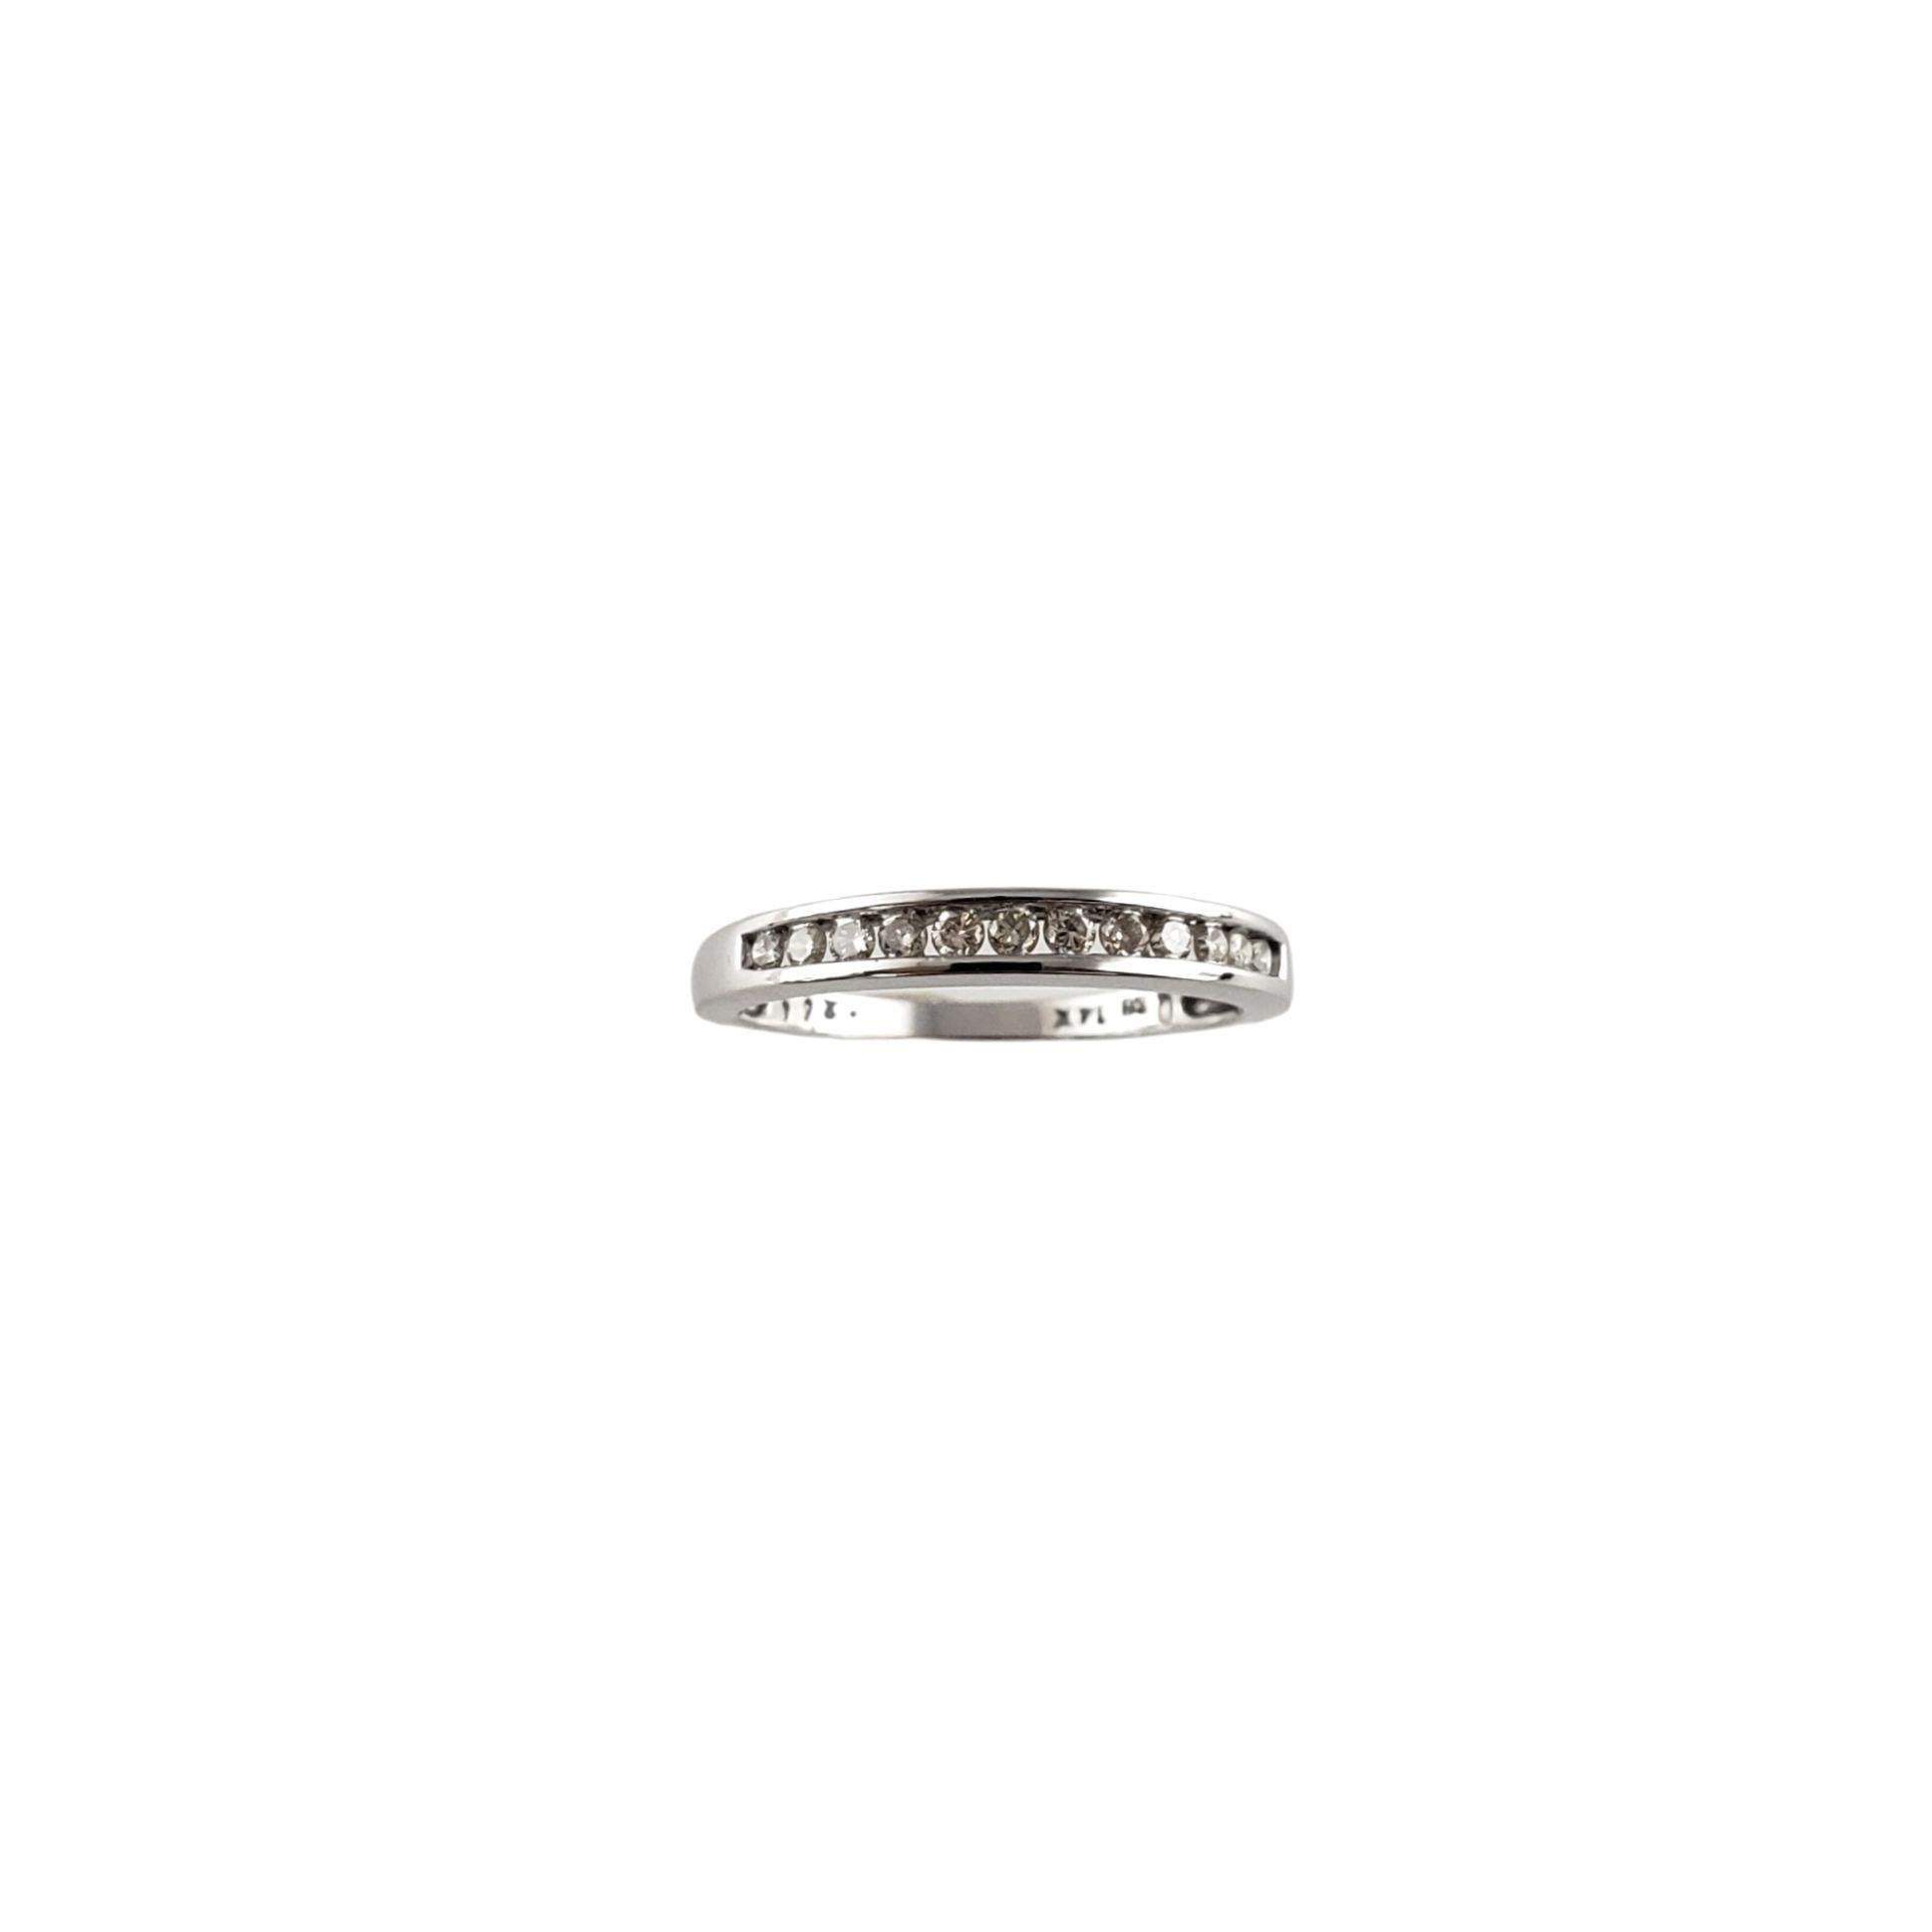 Vintage 14 Karat White Gold Diamond Wedding Band Ring Taille 7-

Ce bracelet étincelant présente 12 diamants ronds de taille brillant sertis dans de l'or blanc classique 14K. Largeur : 3 mm. Tige : 2 mm.

Poids total des diamants : 0,26 ct.

Clarté